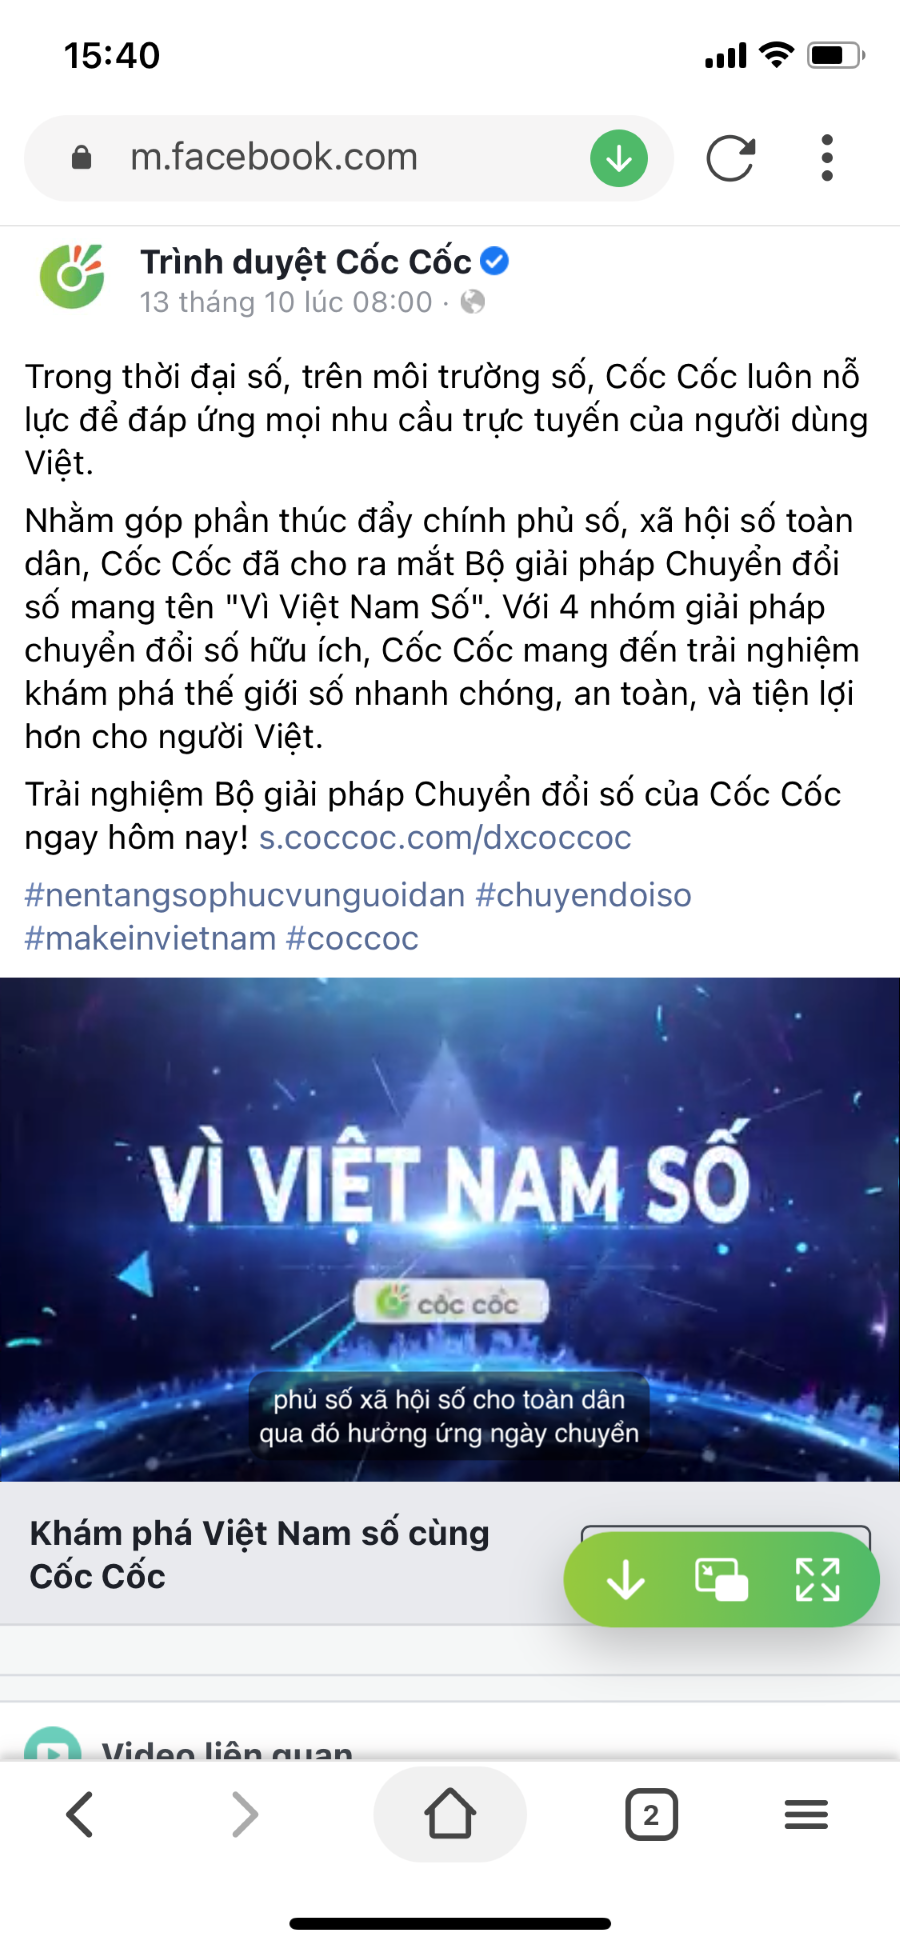 Cach tai video Facebook tien loi nhat voi Coc Coc Mobile